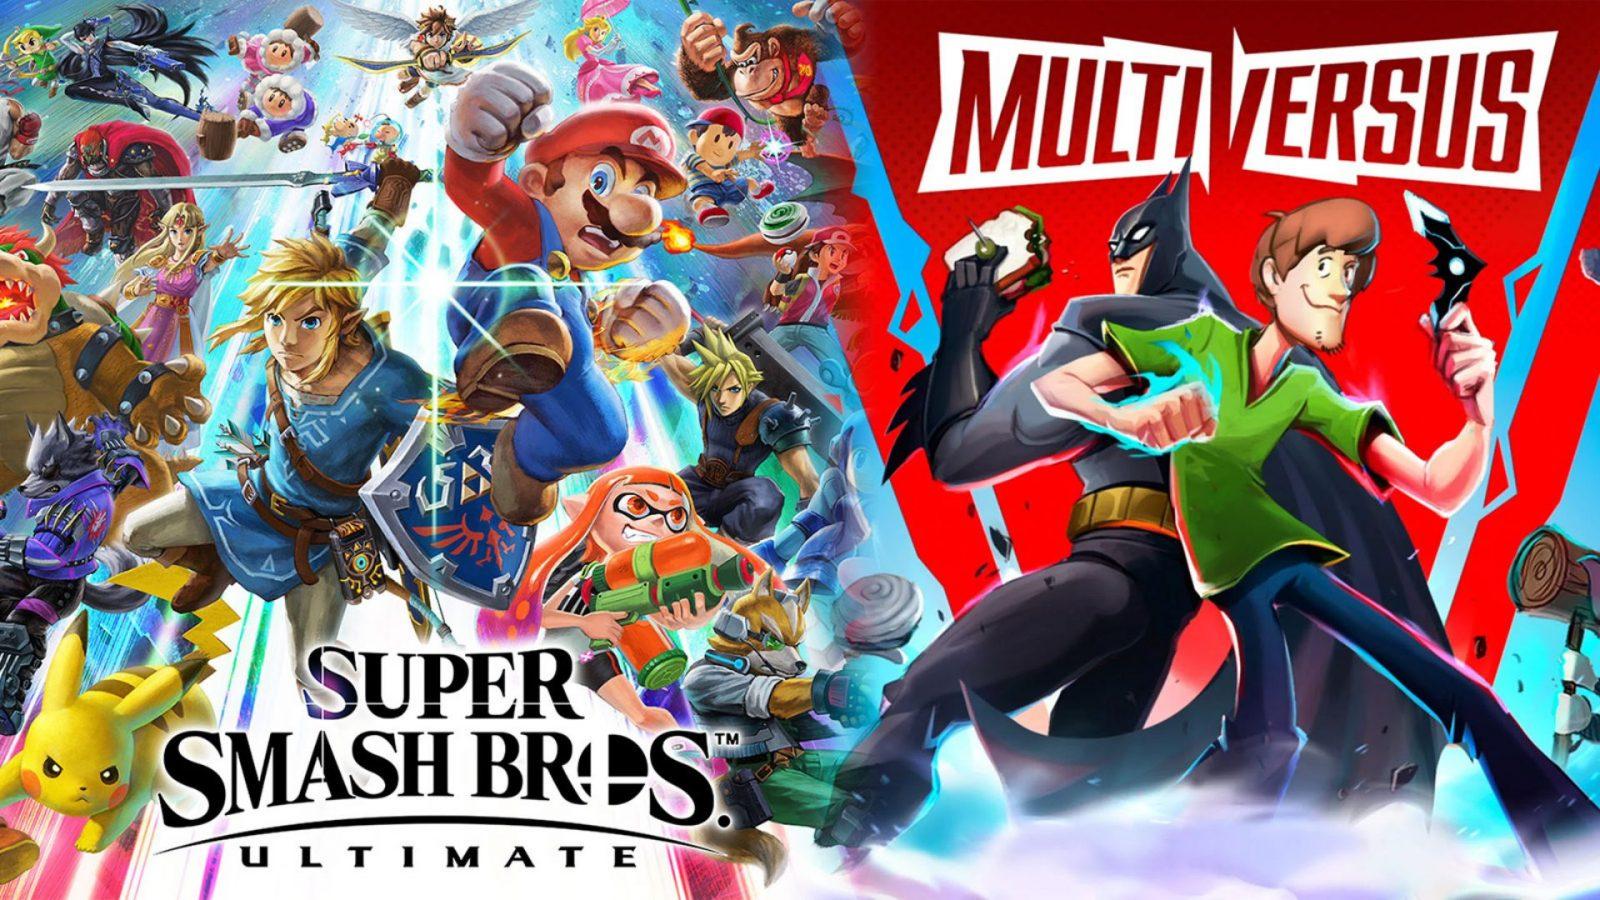 MultiVersus has one huge advantage over Super Smash Bros